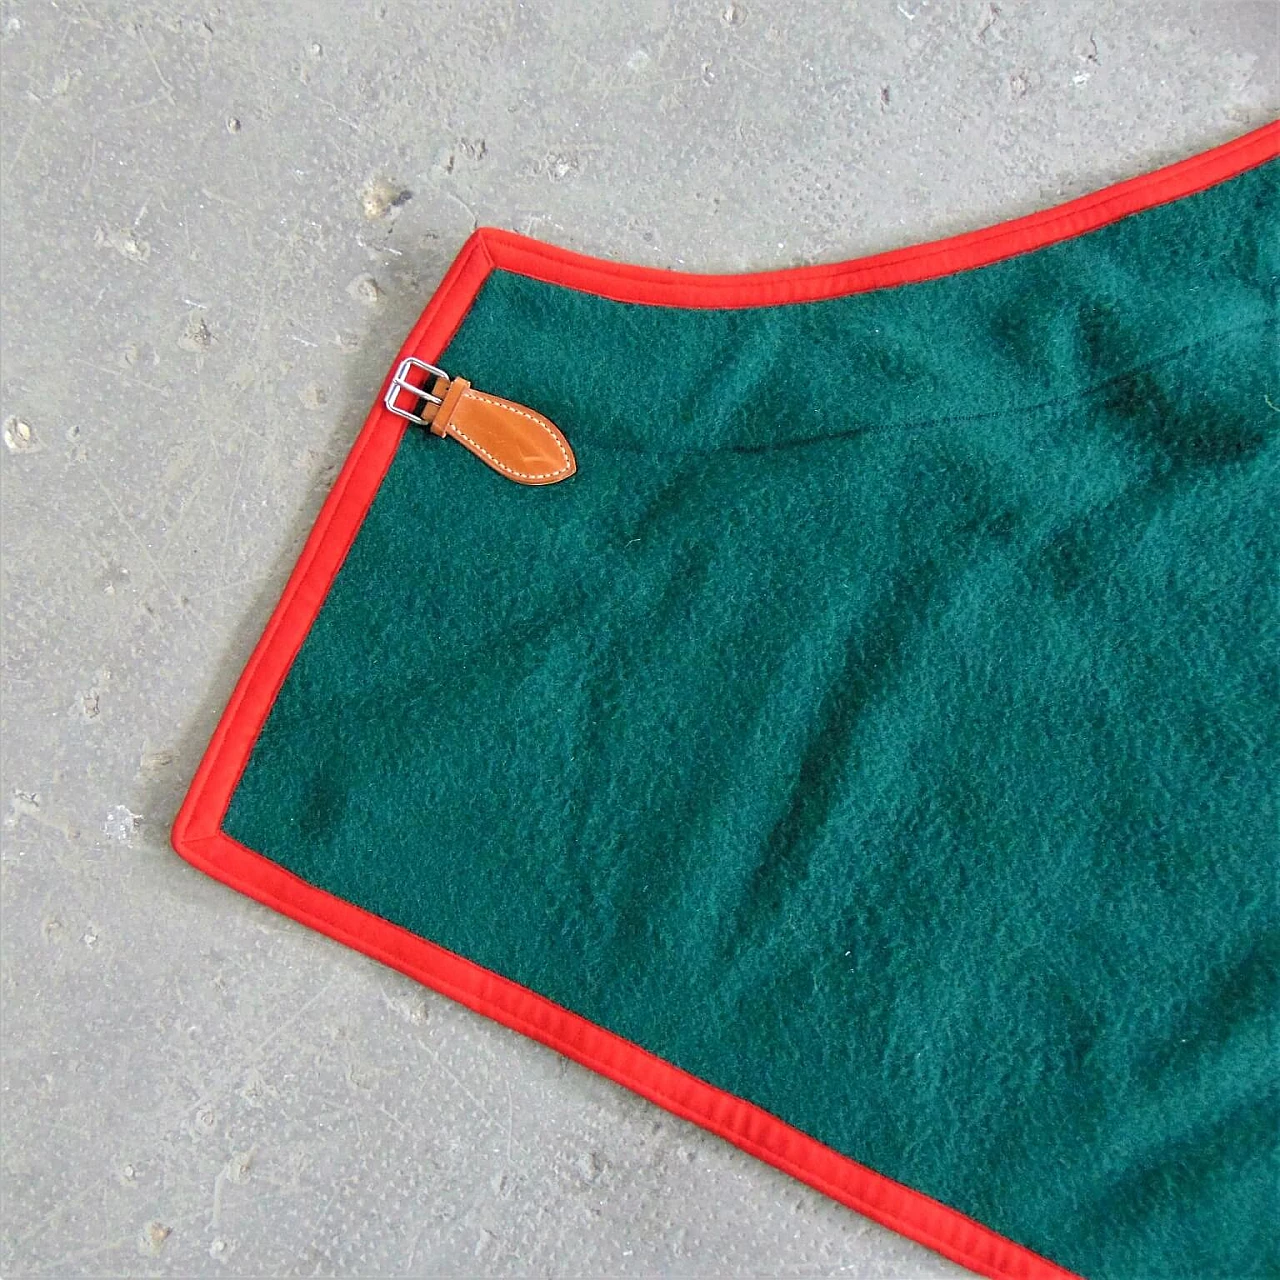 Coperta verde Selleria Pariani, realizzata a mano, pura lana vergine, profili rossi e cuoio, 1980 1071699